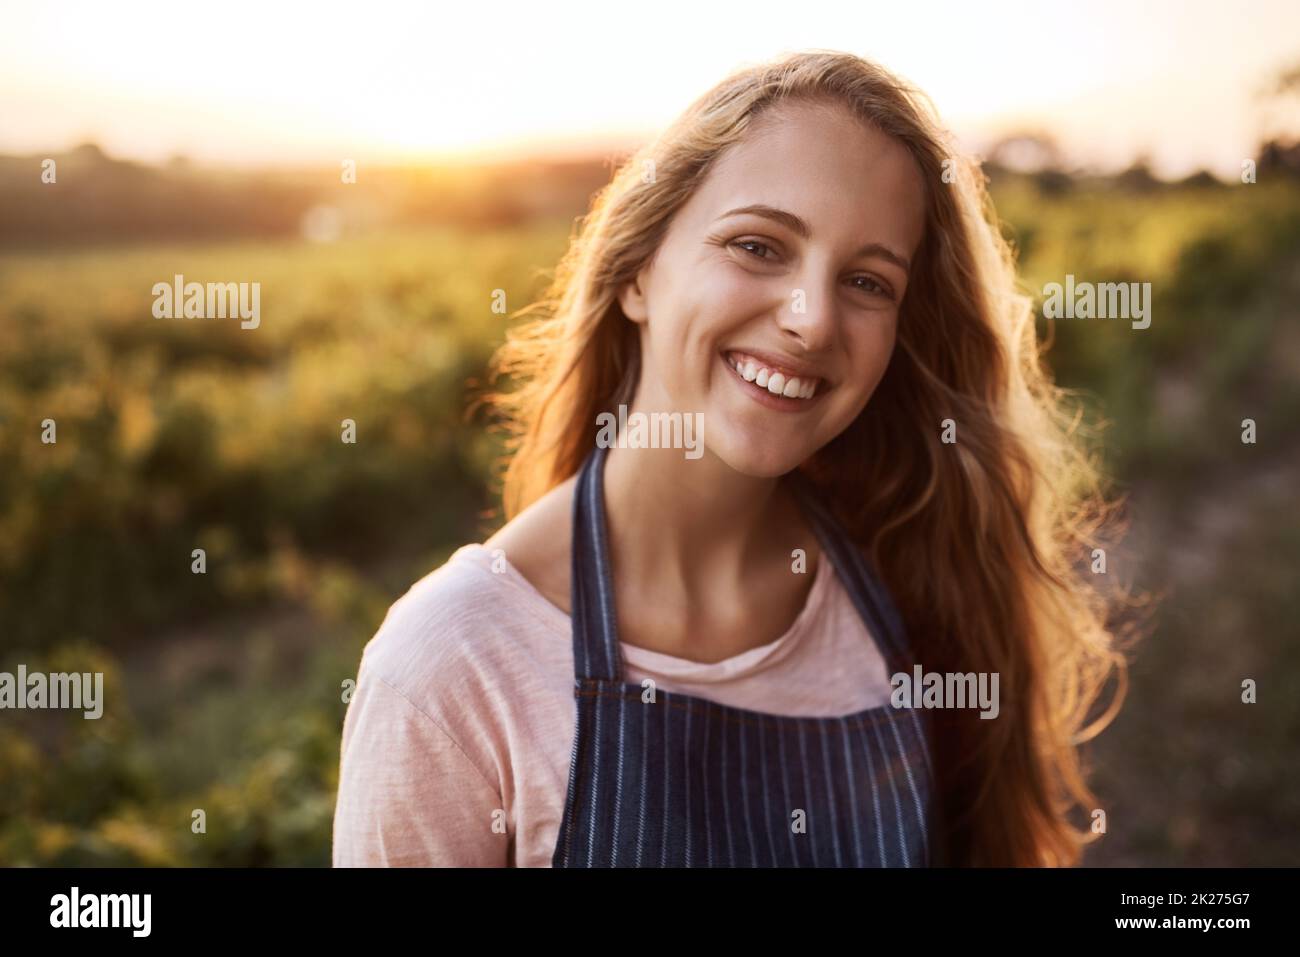 La agricultura es vida. Retrato de una joven feliz trabajando en una granja. Foto de stock